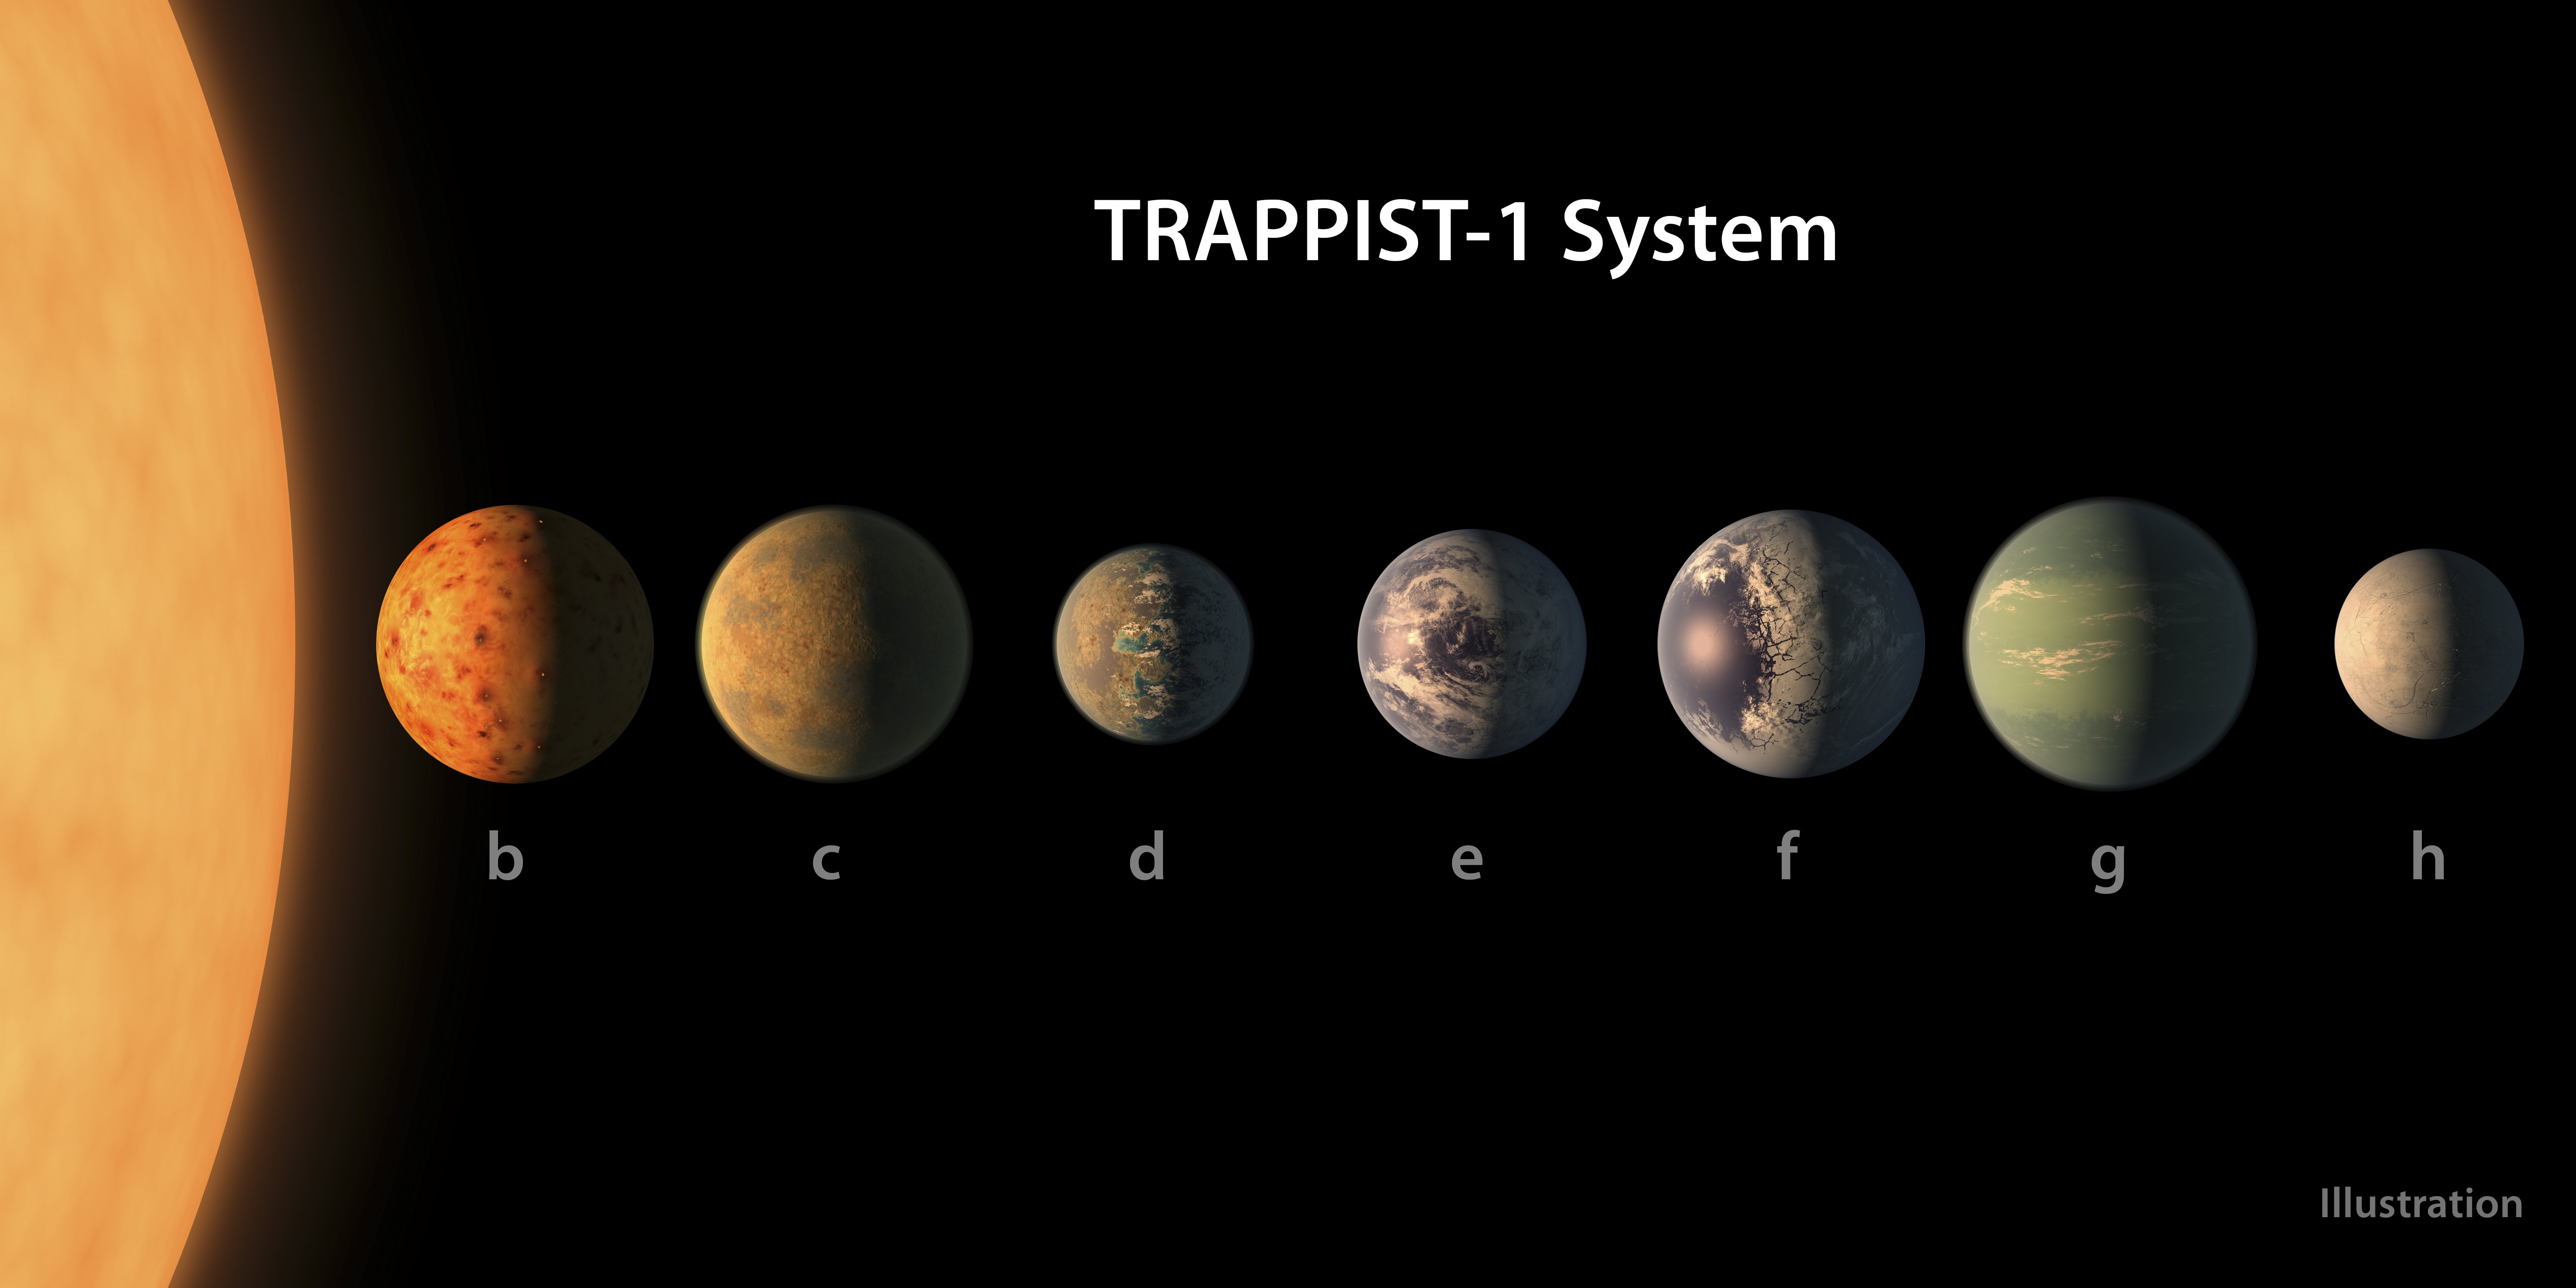 Een impressie van de planeten in het Trappist-1 zonnestelsel. Foto: NASA/EPA